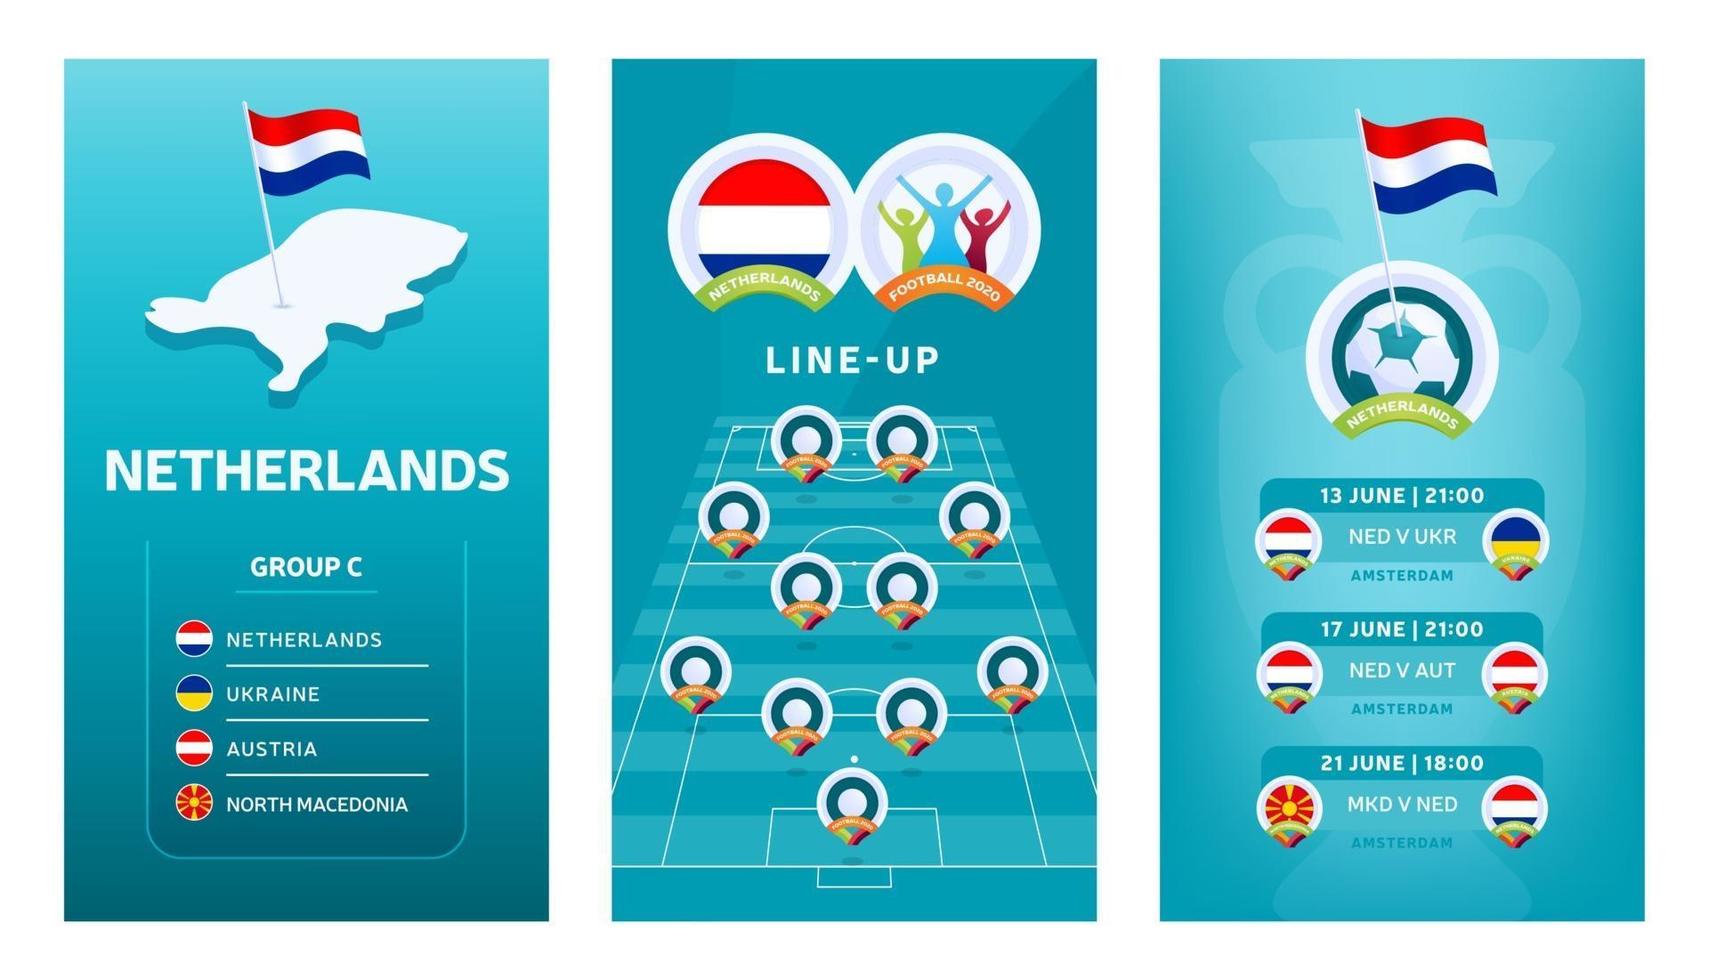 europeisk fotboll vertikal banner för 2020 2020 för sociala medier. Nederländerna grupp c-banner med isometrisk karta, pin-flagga, matchschema och uppställning på fotbollsplan vektor